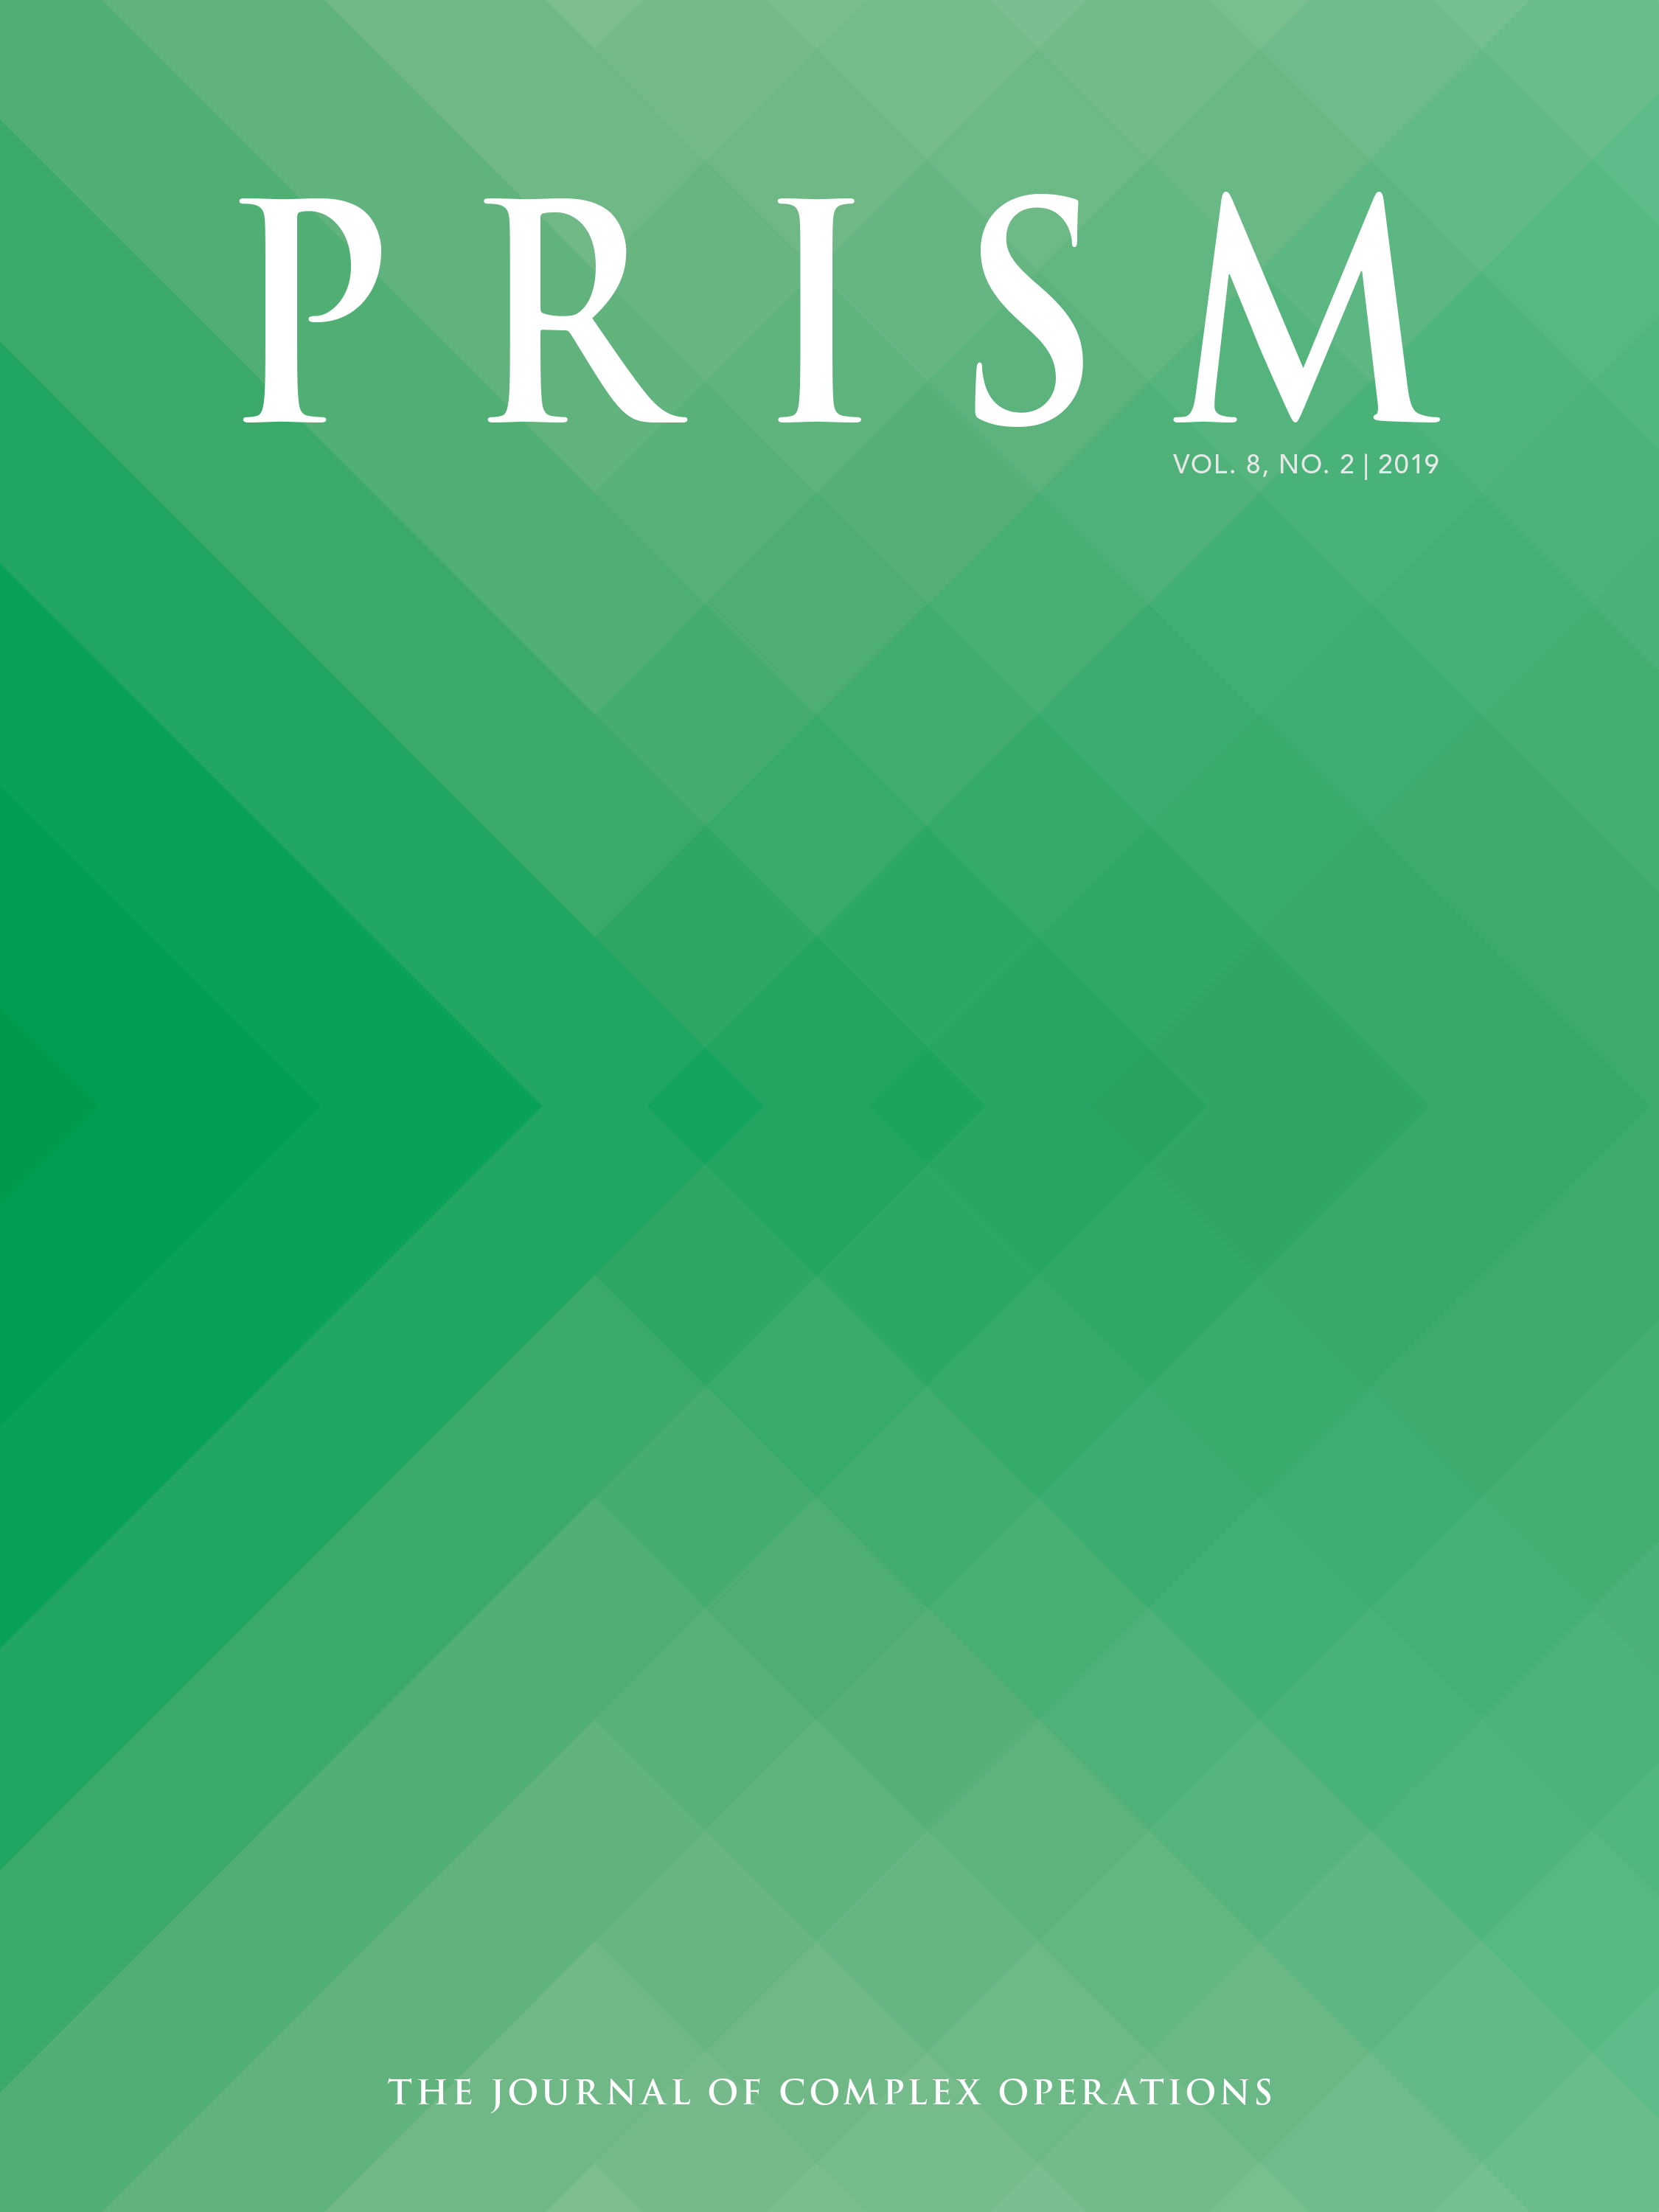 PRISM Vol. 8, No. 2